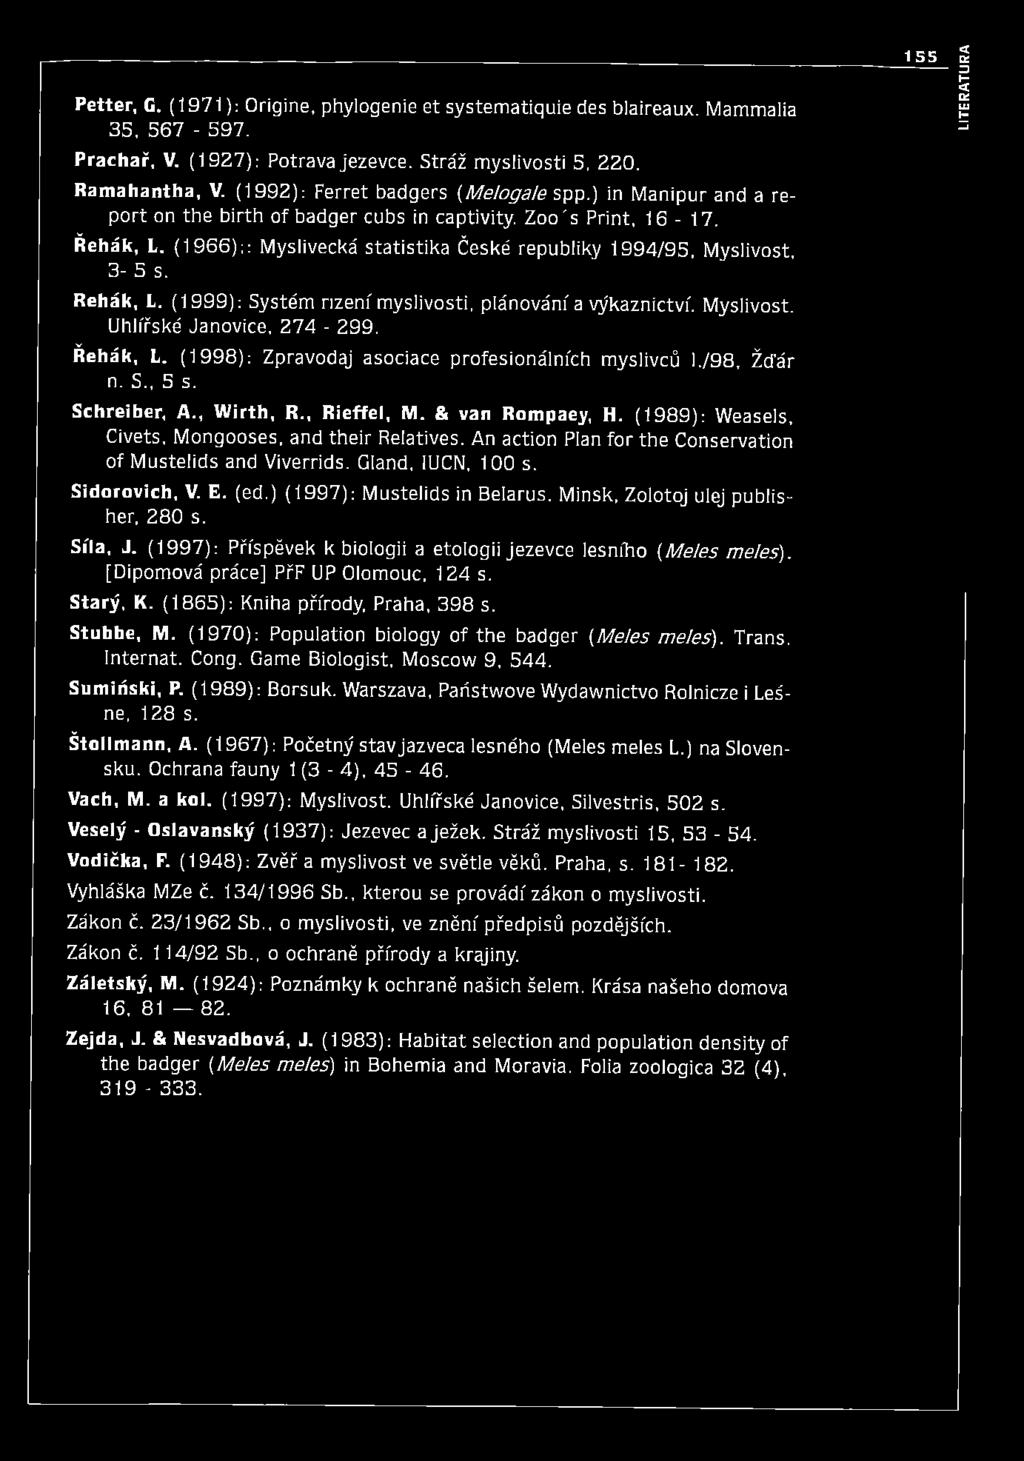 (1 9 66);: Myslivecká statistika České republiky 1994/95, Myslivost, 3-5 s. Řehák, L. (1999): Systém nzenf m yslivosti, plánování a výkaznictví. Myslivost. Uhlířské Janovice, 274-299. Řehák, L. (1998): Zpravodaj asociace profesionálních myslivců 1.